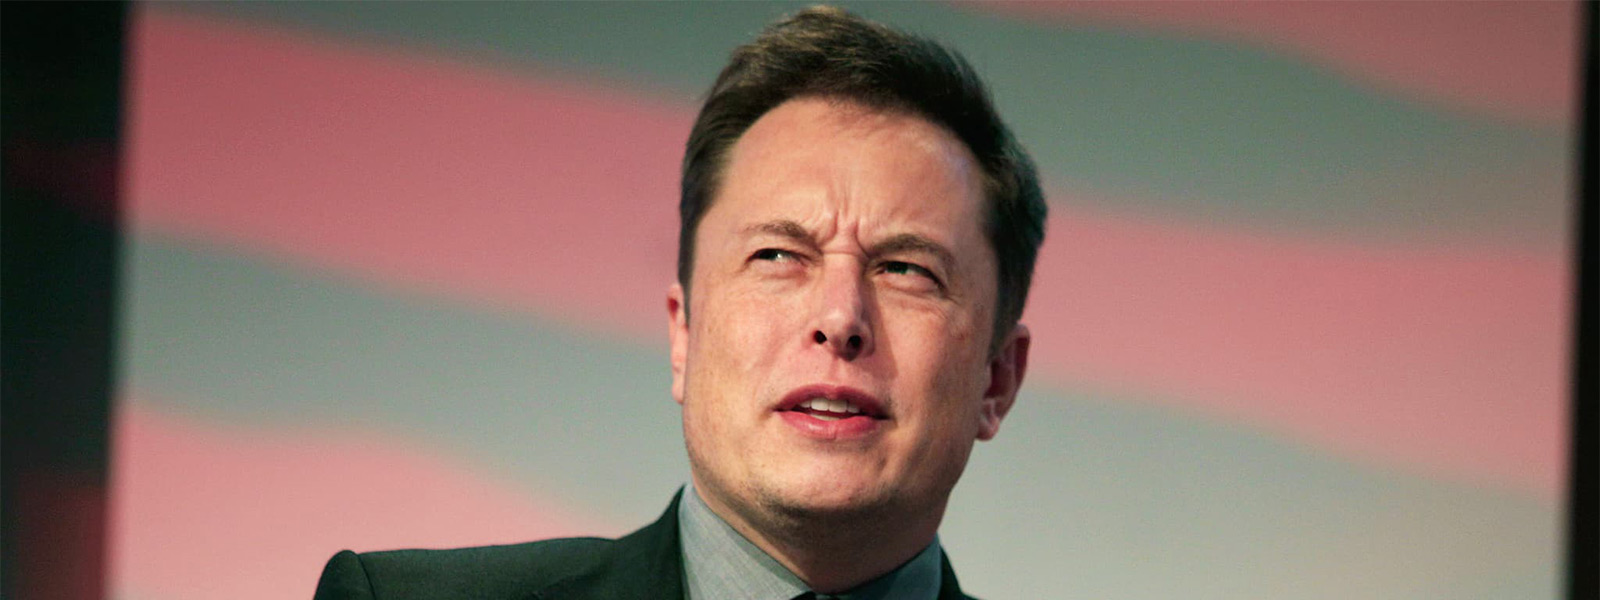 Сотрудник Tesla пожаловался на Маска, низкую зарплату и условия работы 2